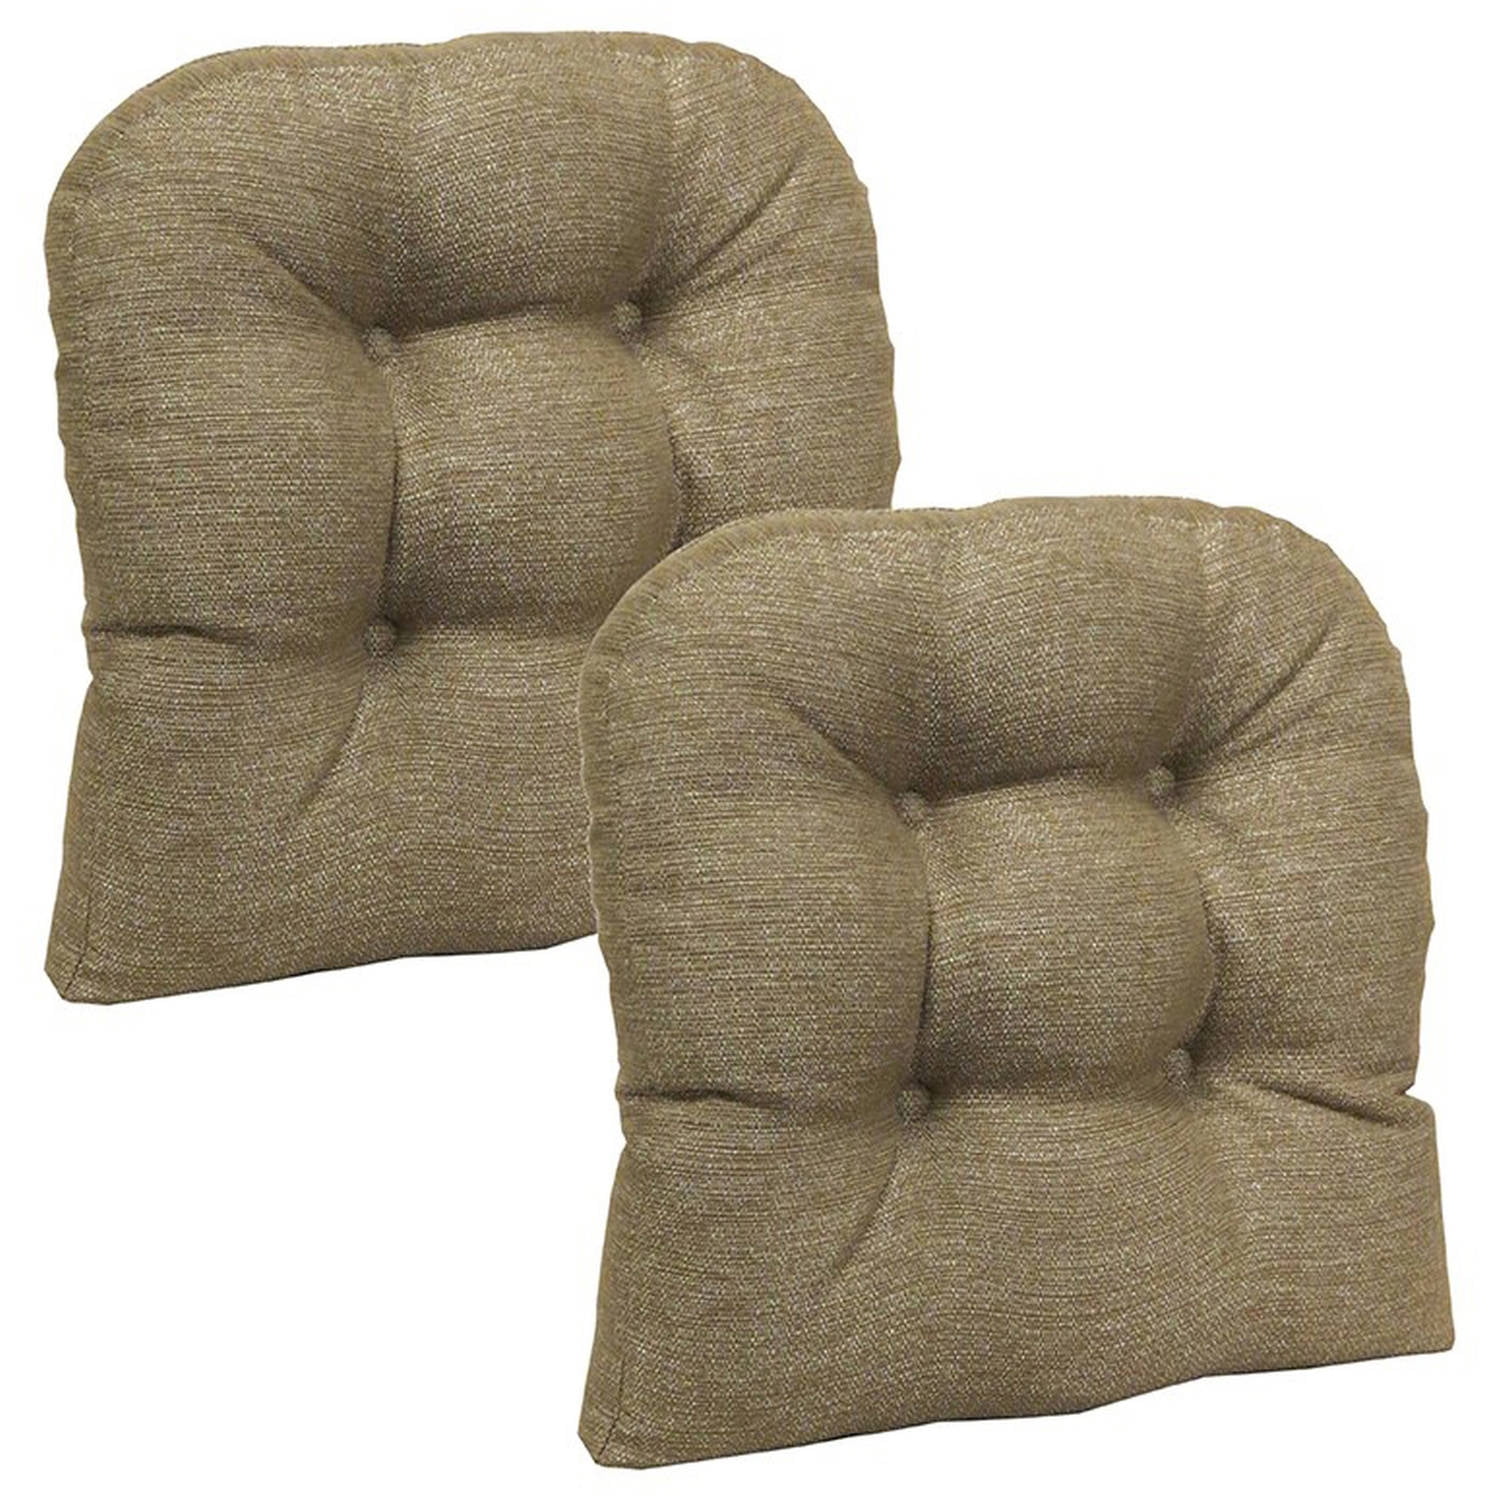 Gripper Non Slip 15 X 15 Omega Tufted Universal Chair Cushions